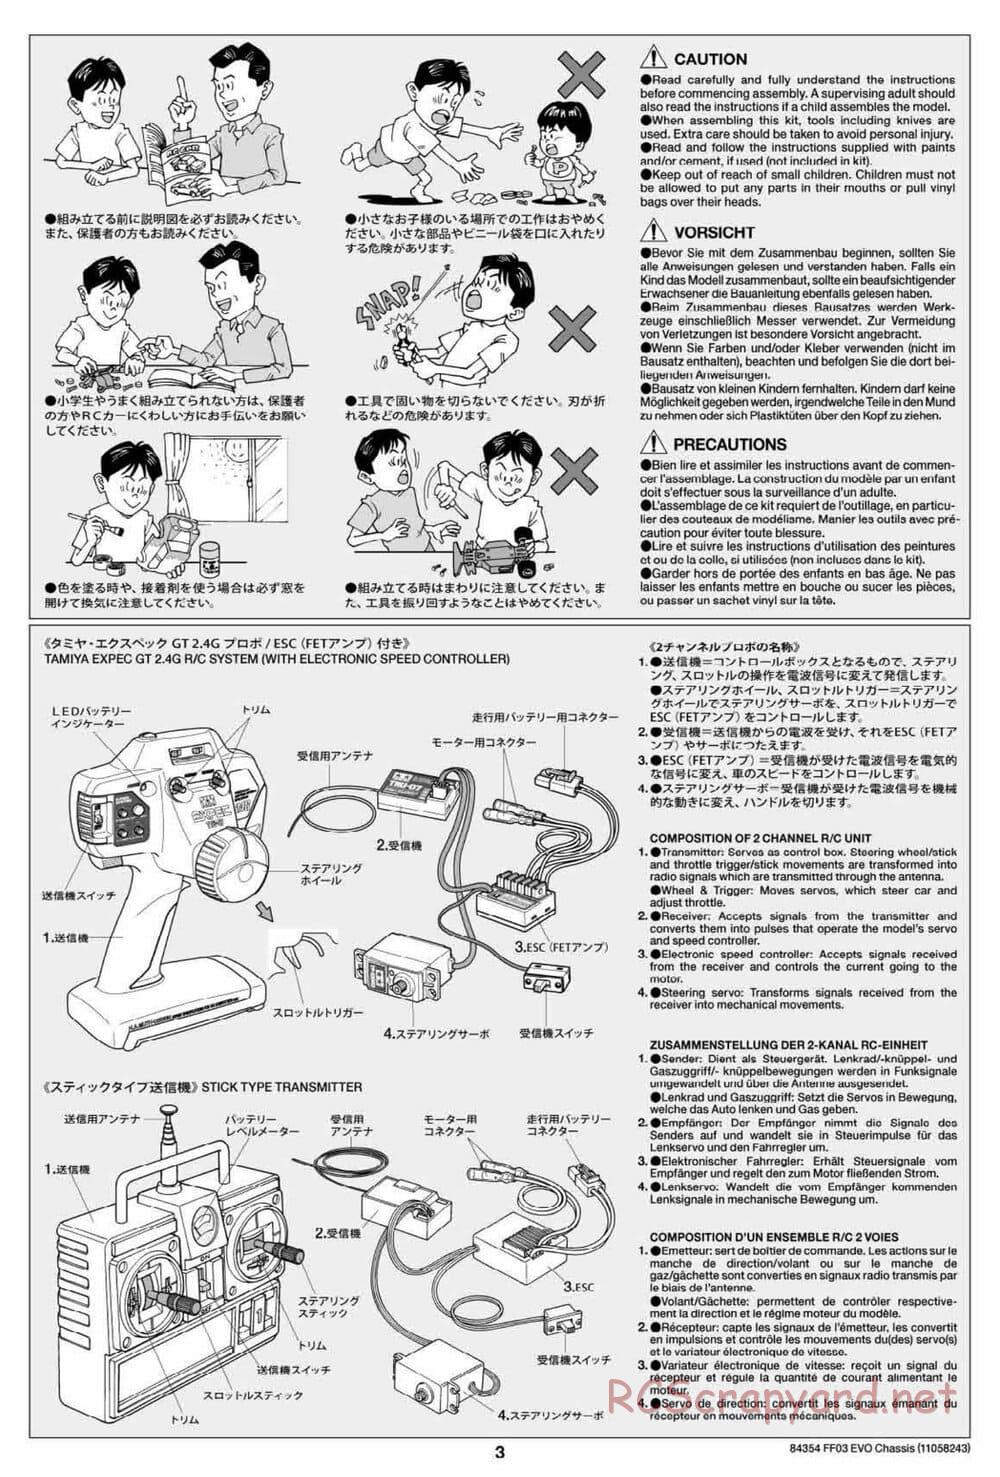 Tamiya - FF-03 Evo Chassis - Manual - Page 3